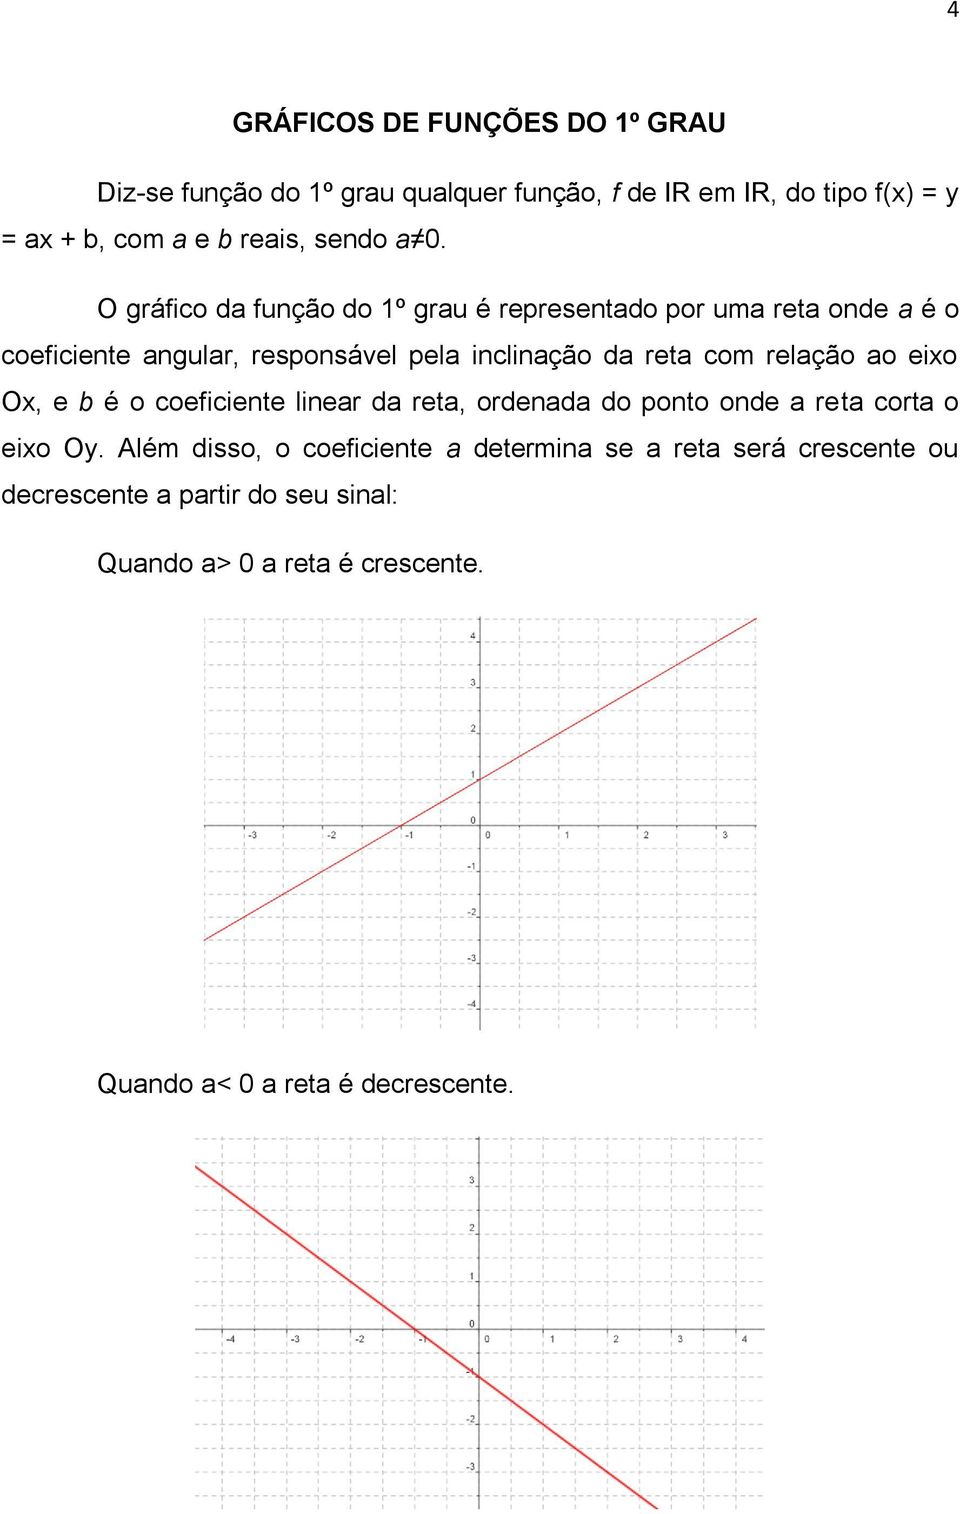 O gráfico da função do 1º grau é representado por uma reta onde a é o coeficiente angular, responsável pela inclinação da reta com